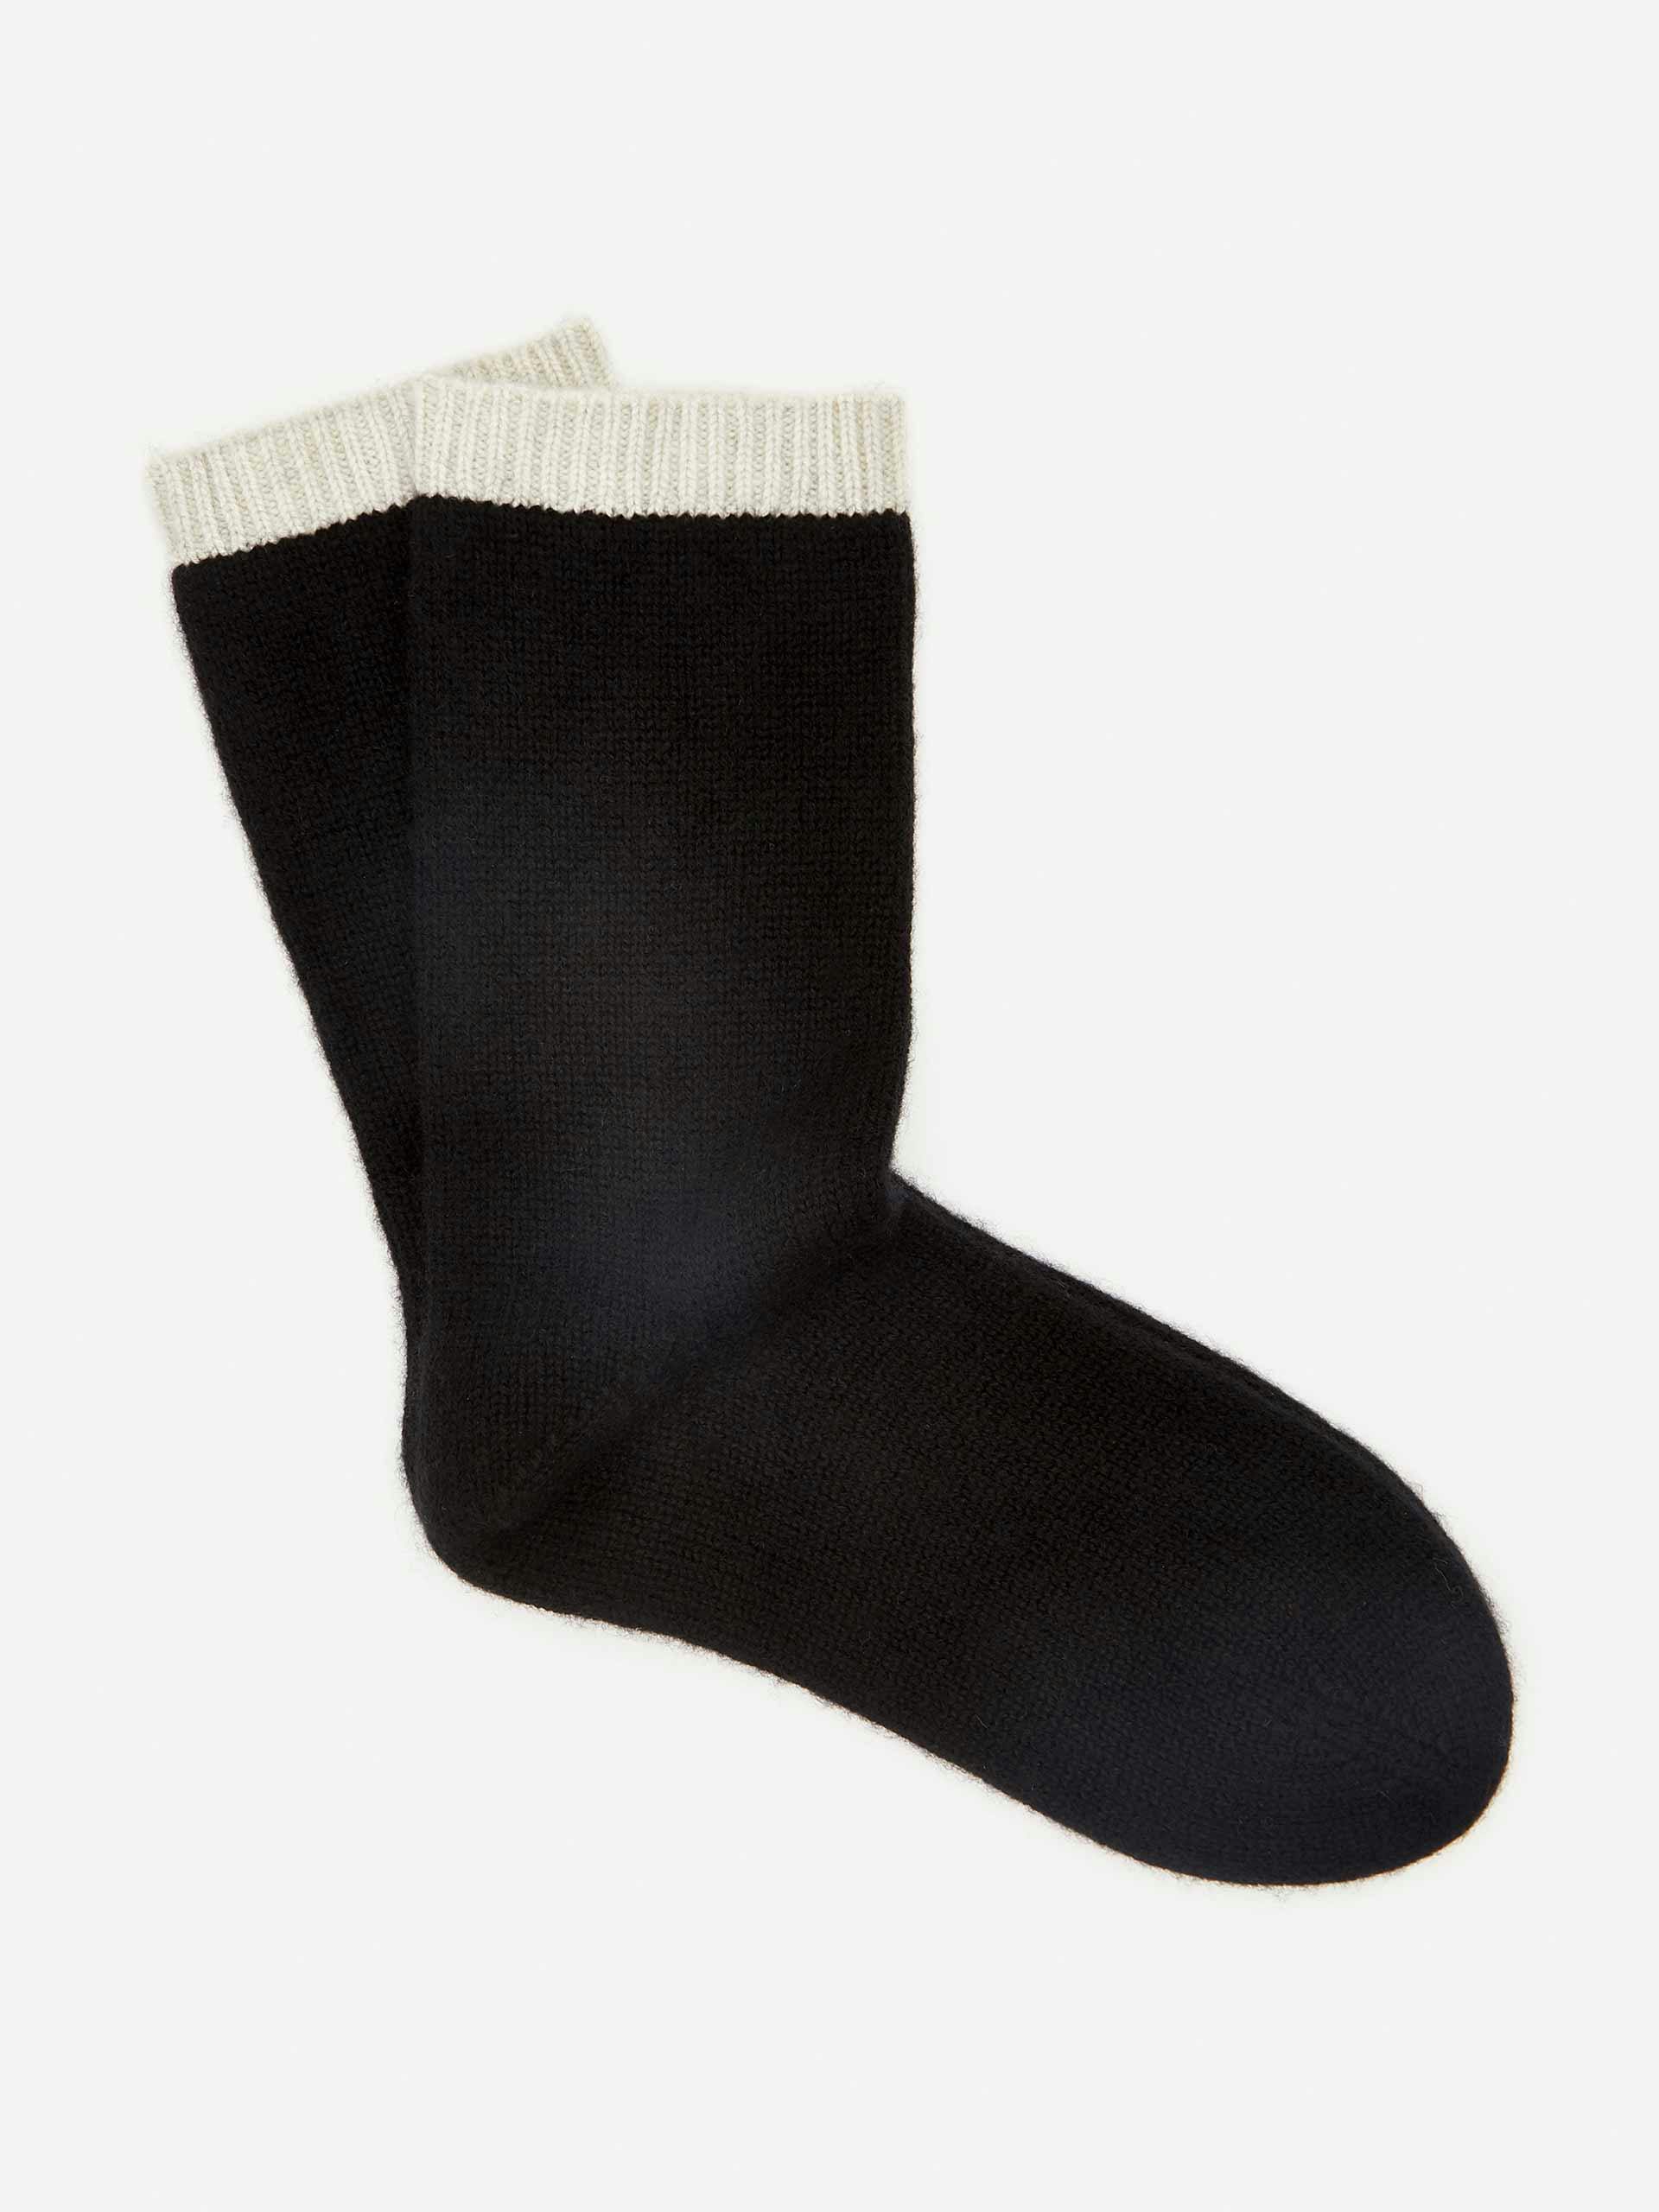 Cashmere socks